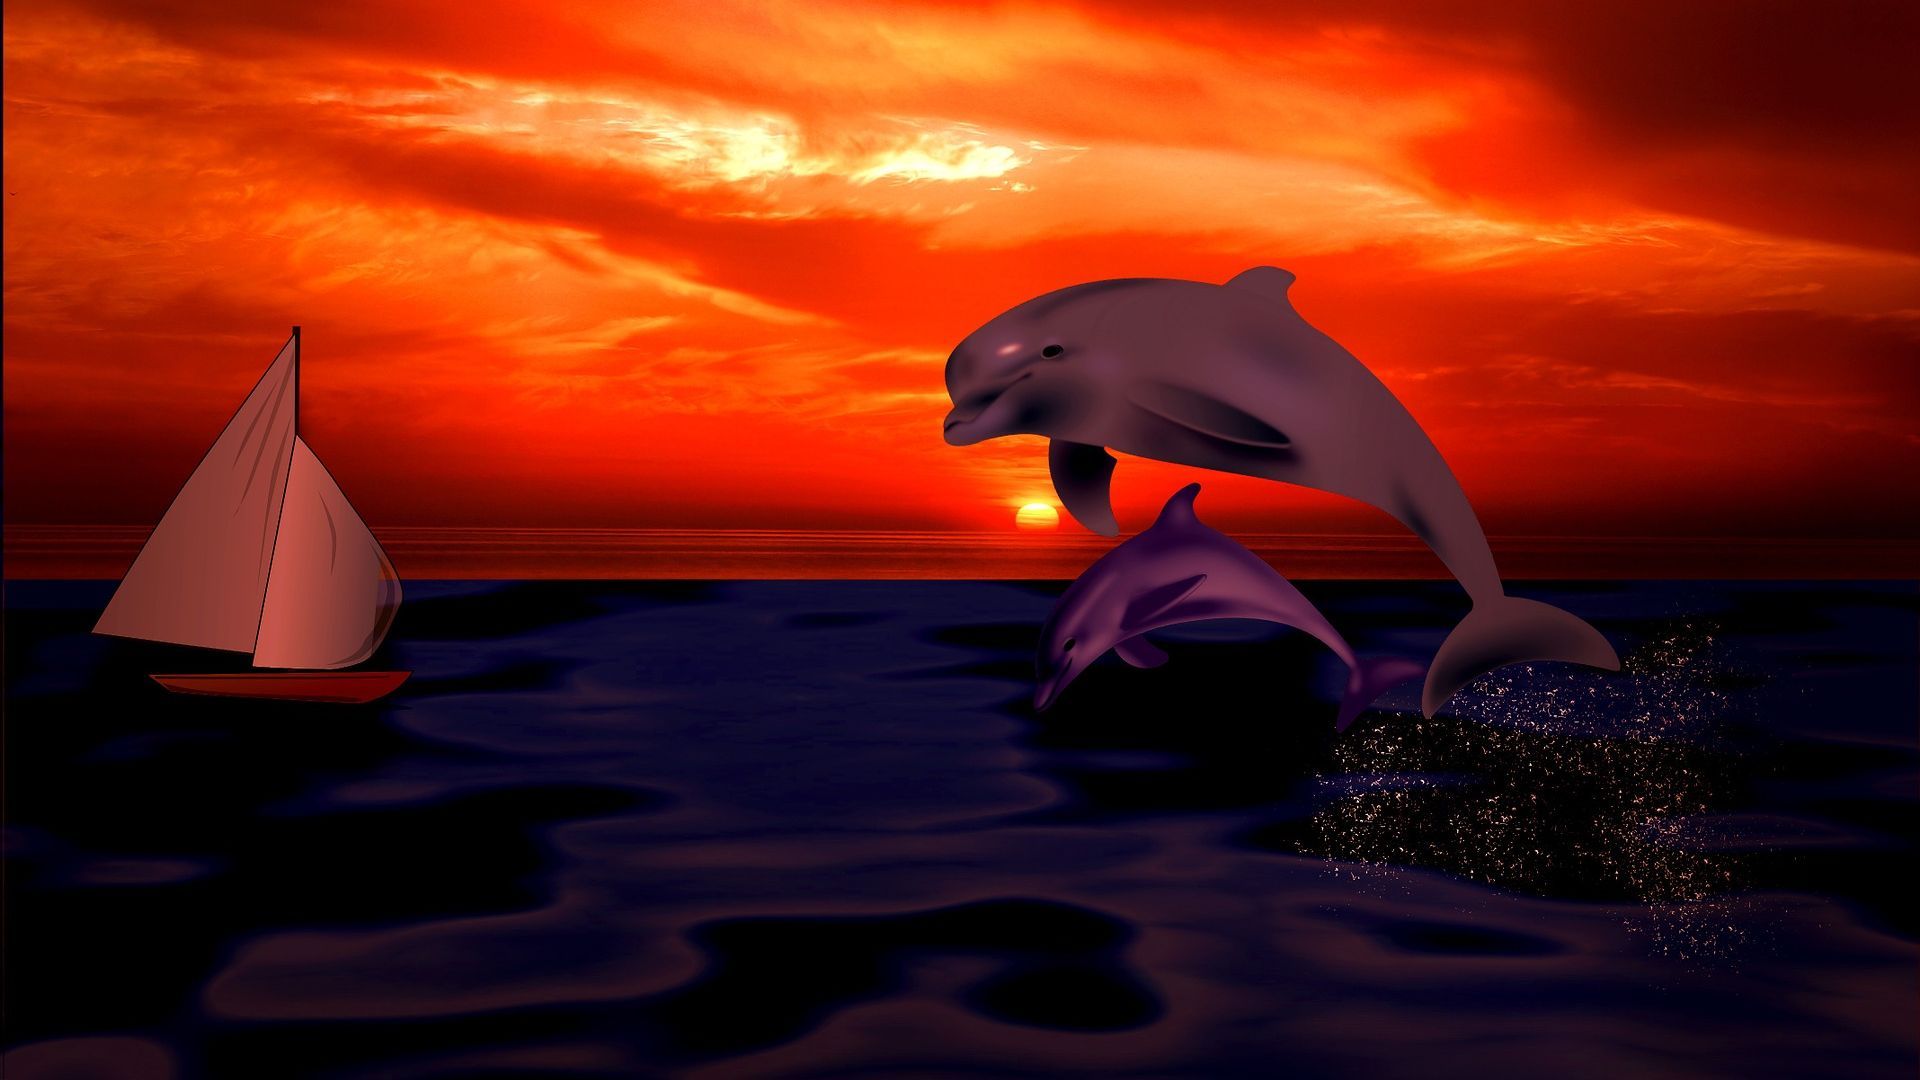 Дельфин на закате